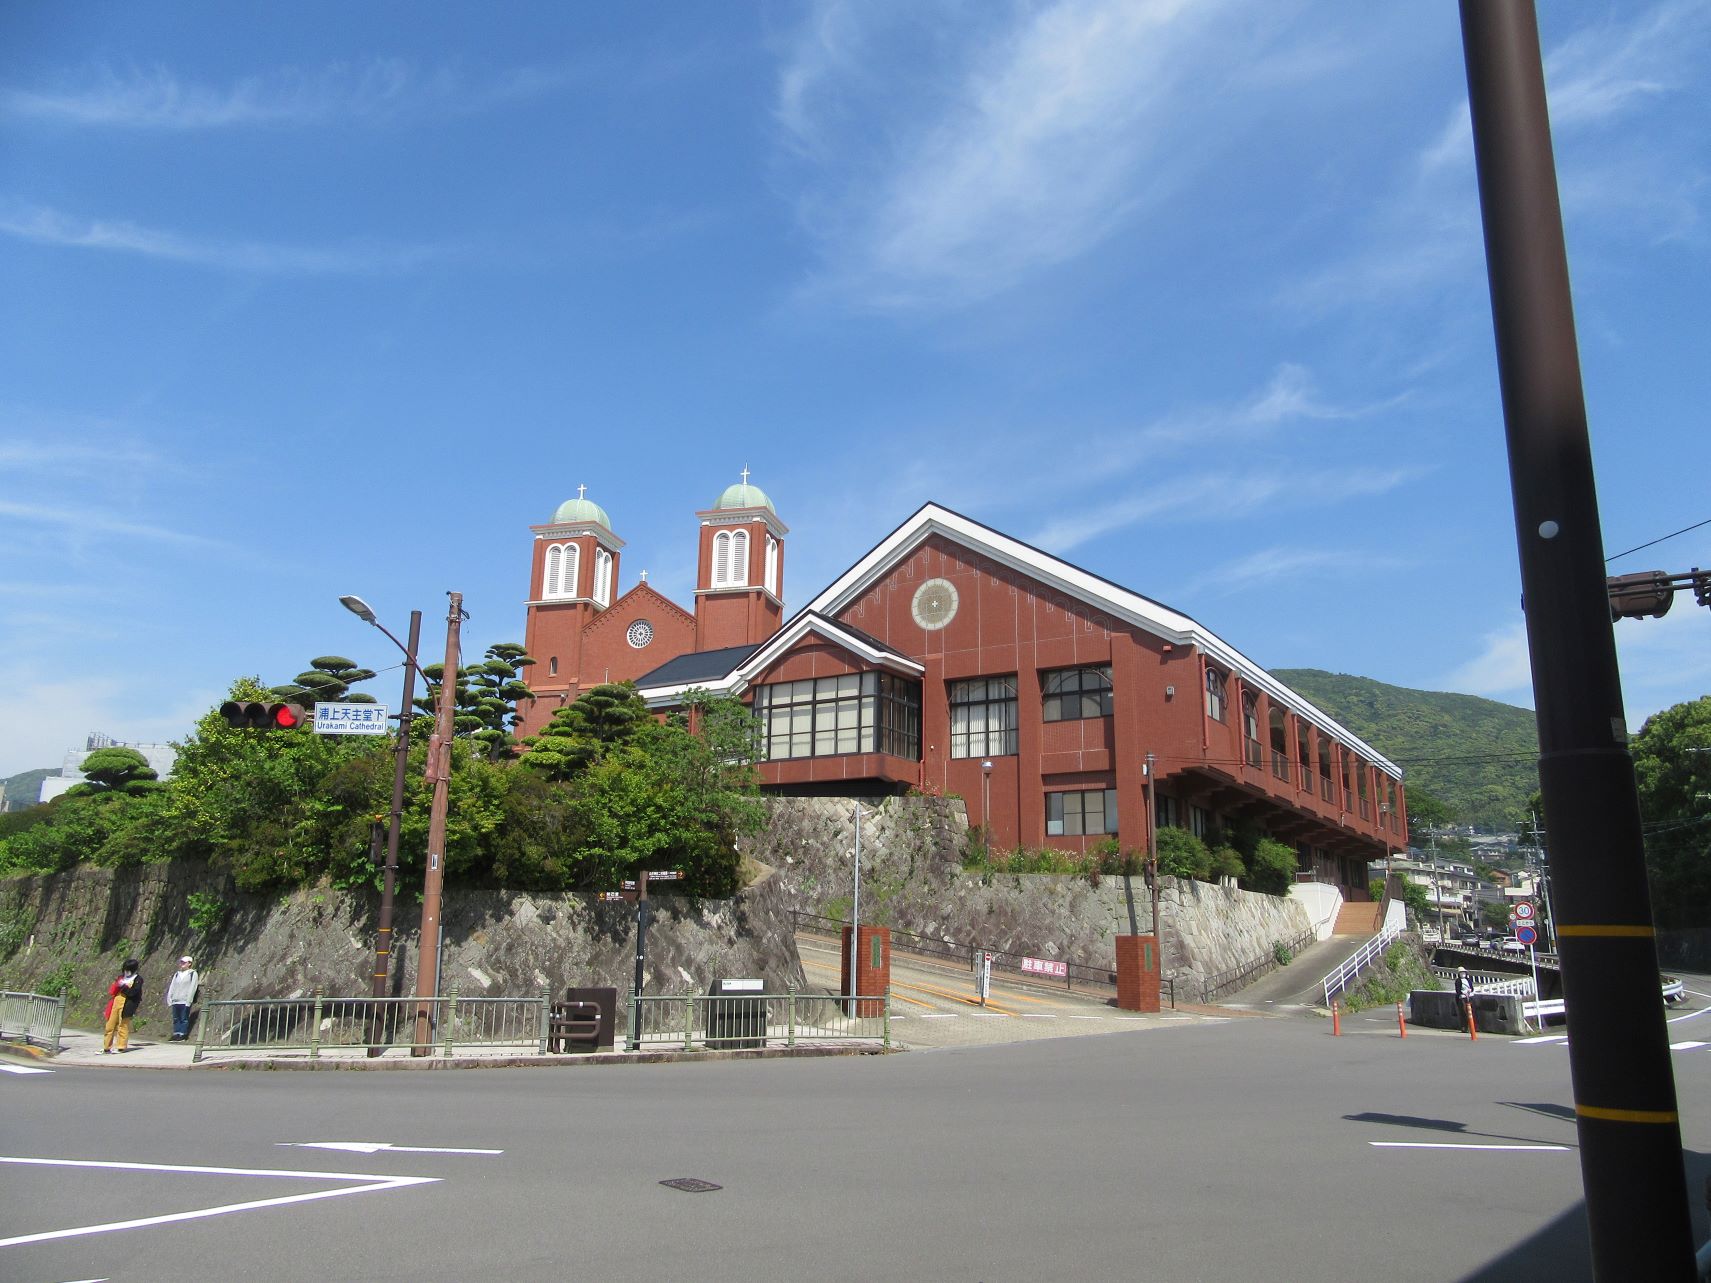 Urakami Church, a famous church in Nagasaki.